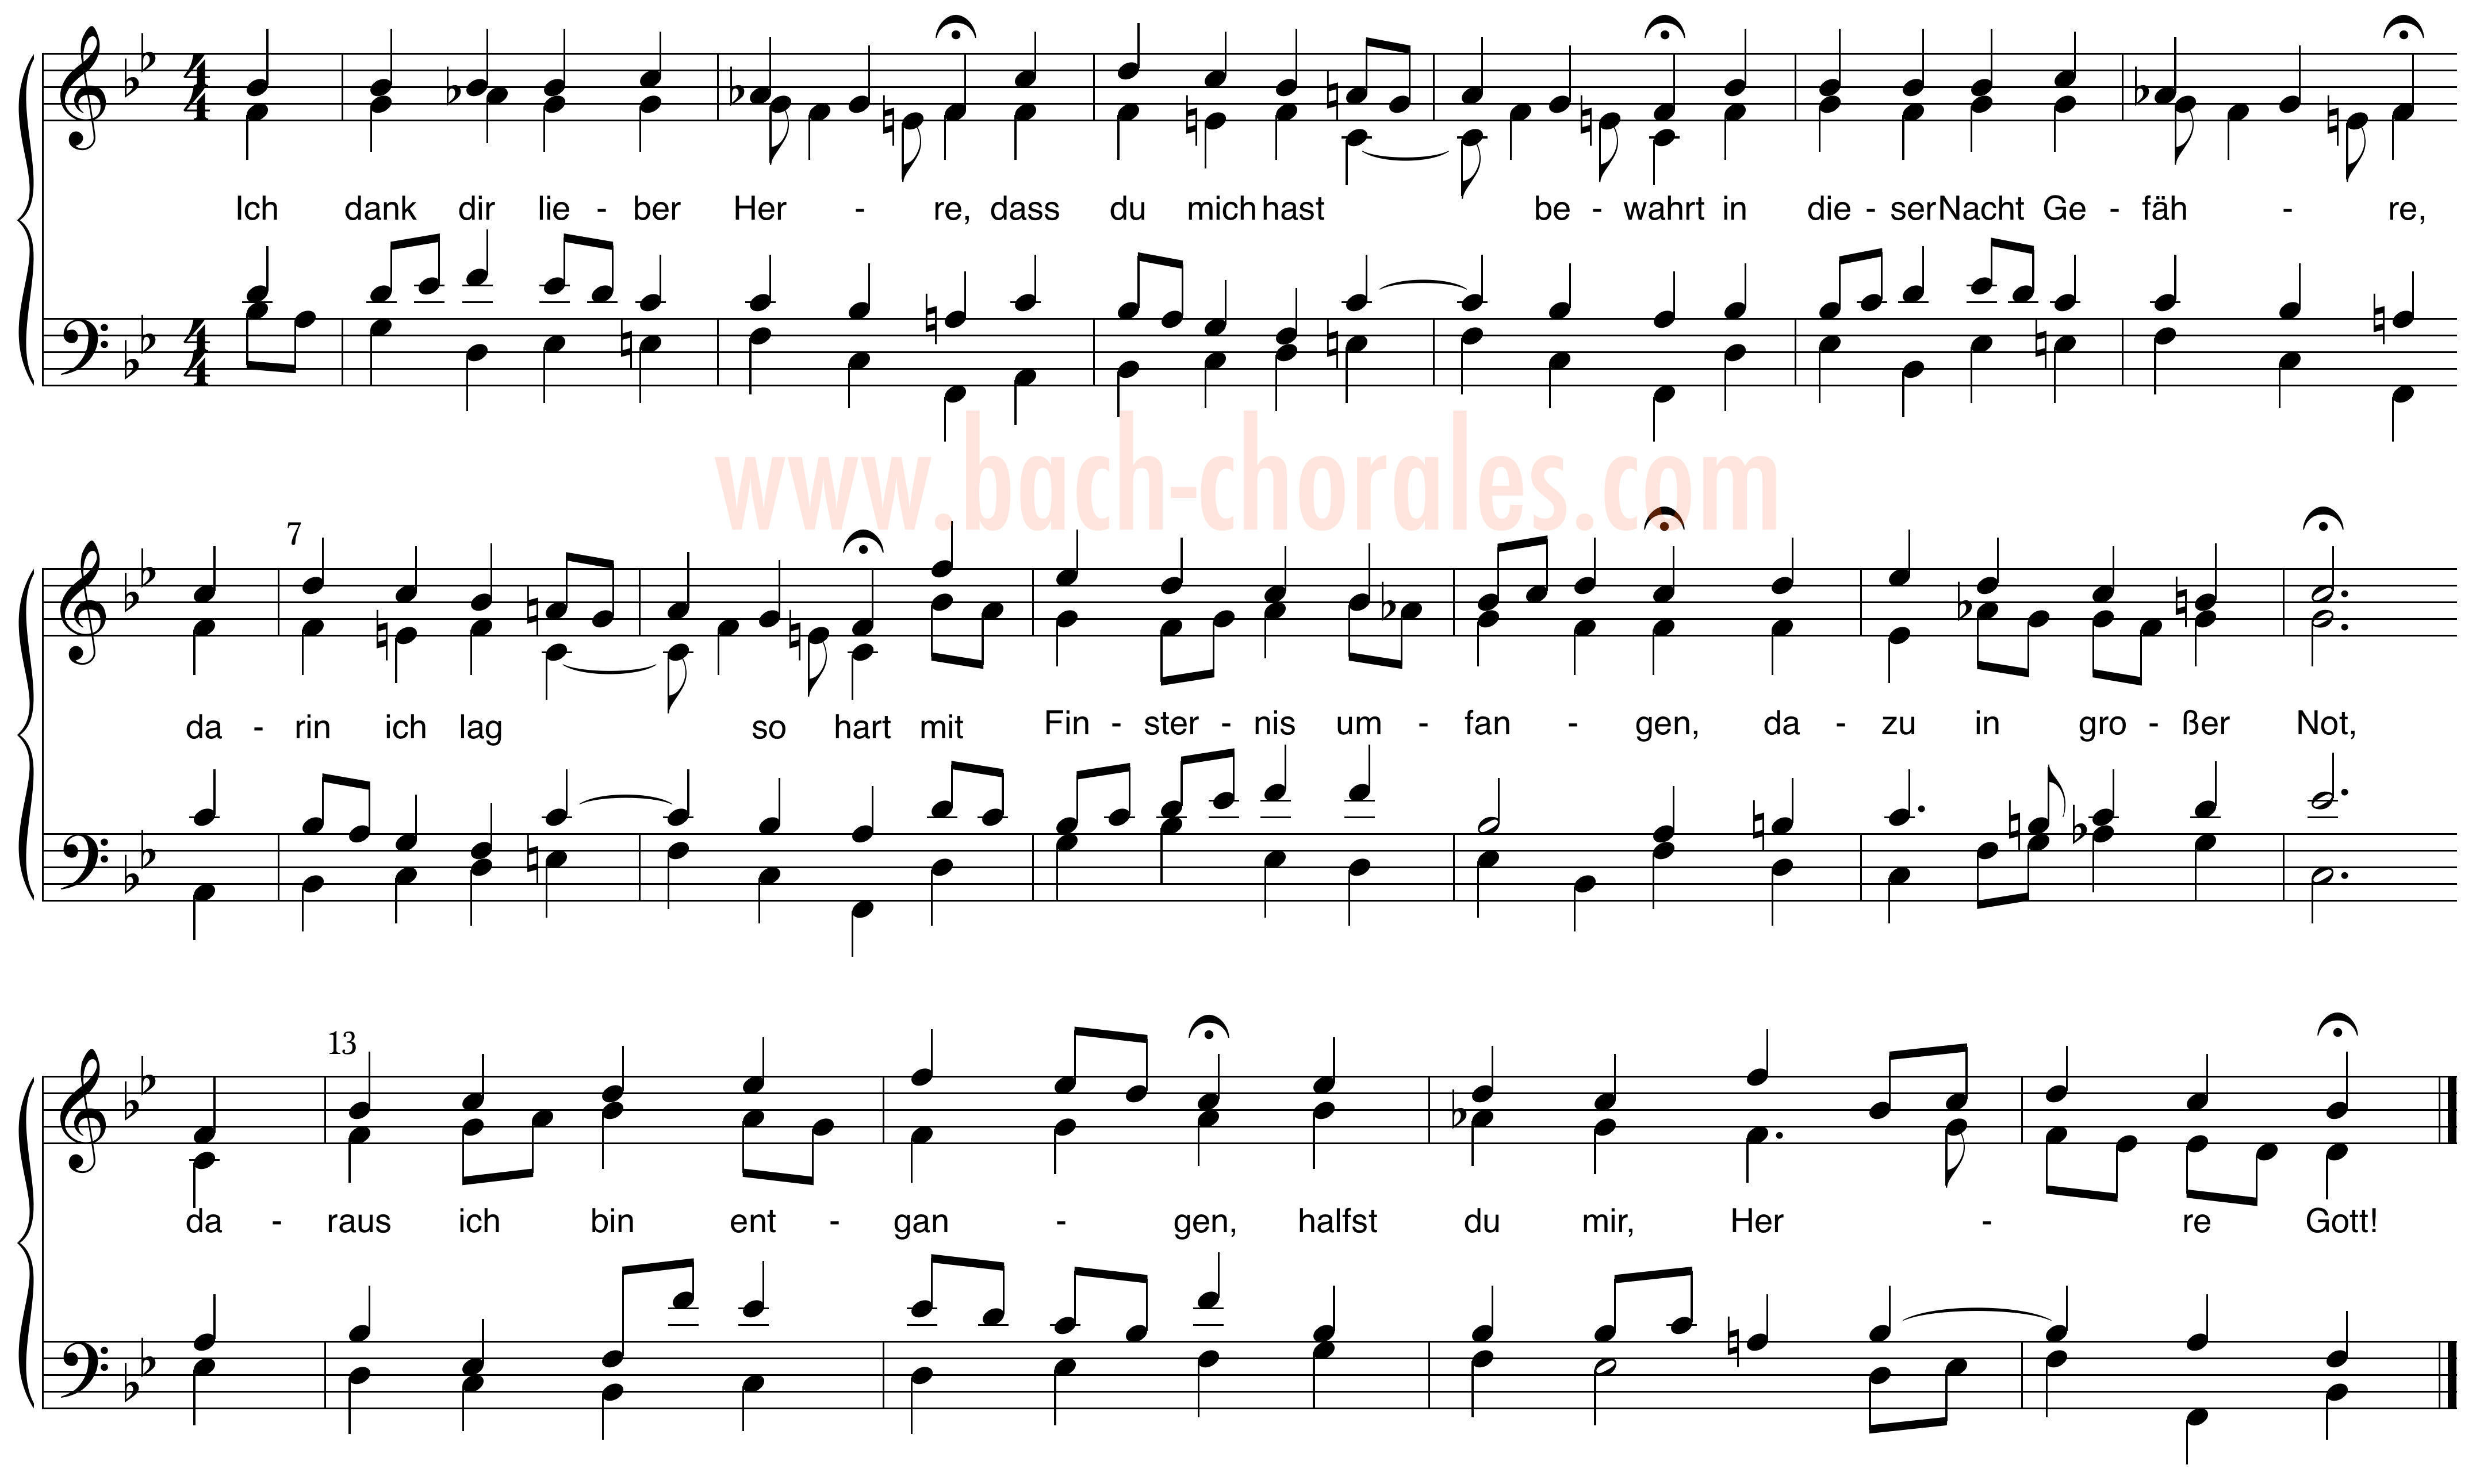 notenbeeld BWV 348 op https://www.bach-chorales.com/